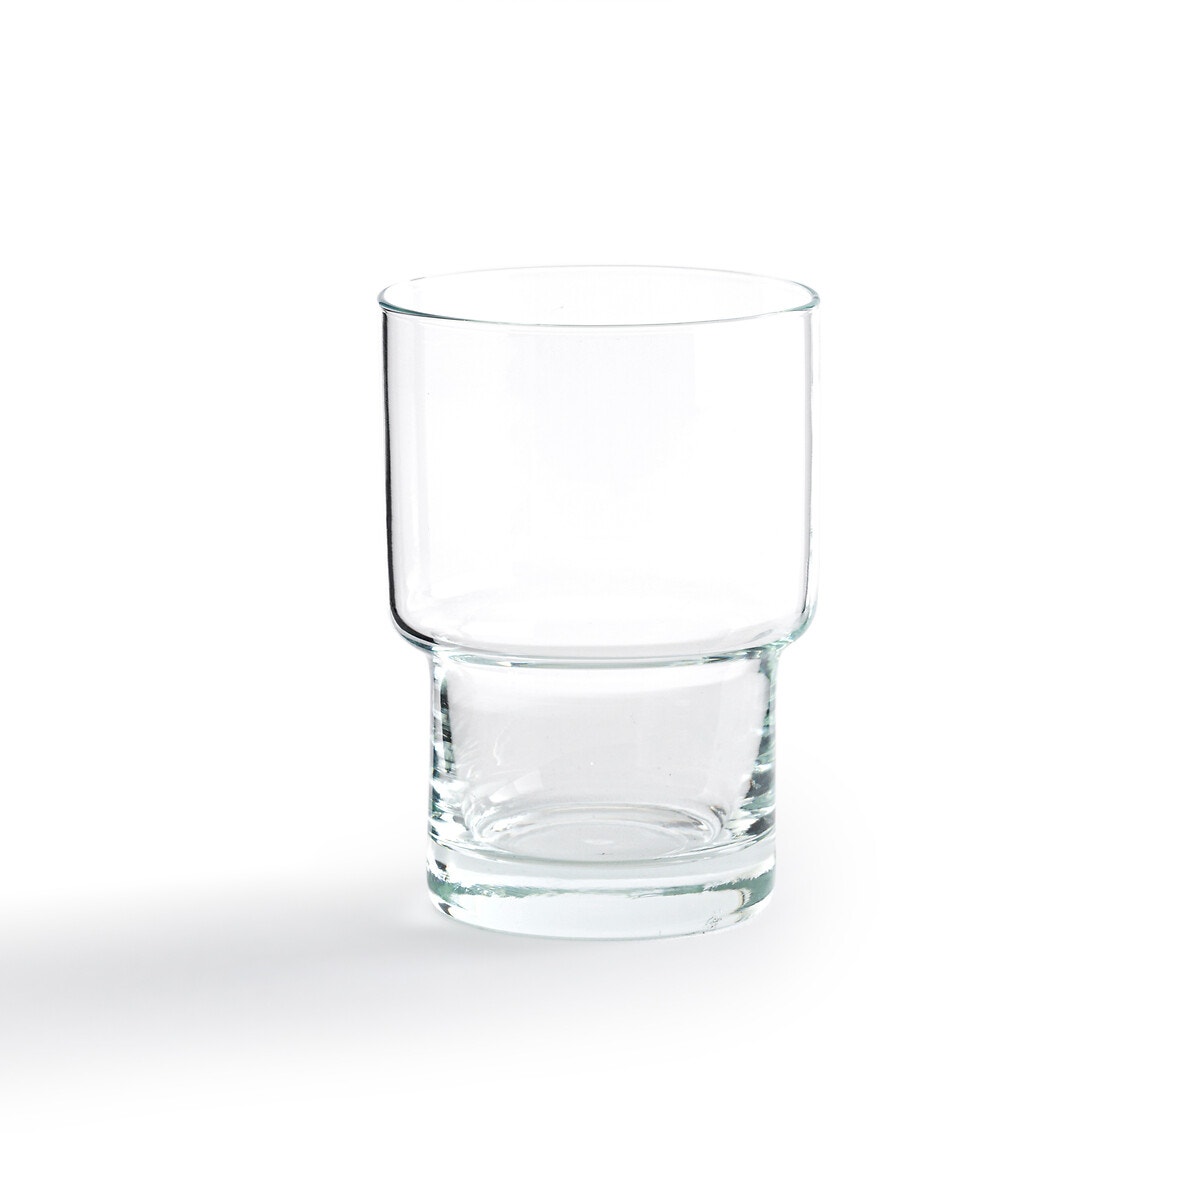 Σπίτι > Διακόσμηση > Είδη σερβιρίσματος > Ποτήρια Σετ 6 ποτήρια νερού από διάφανο γυαλί